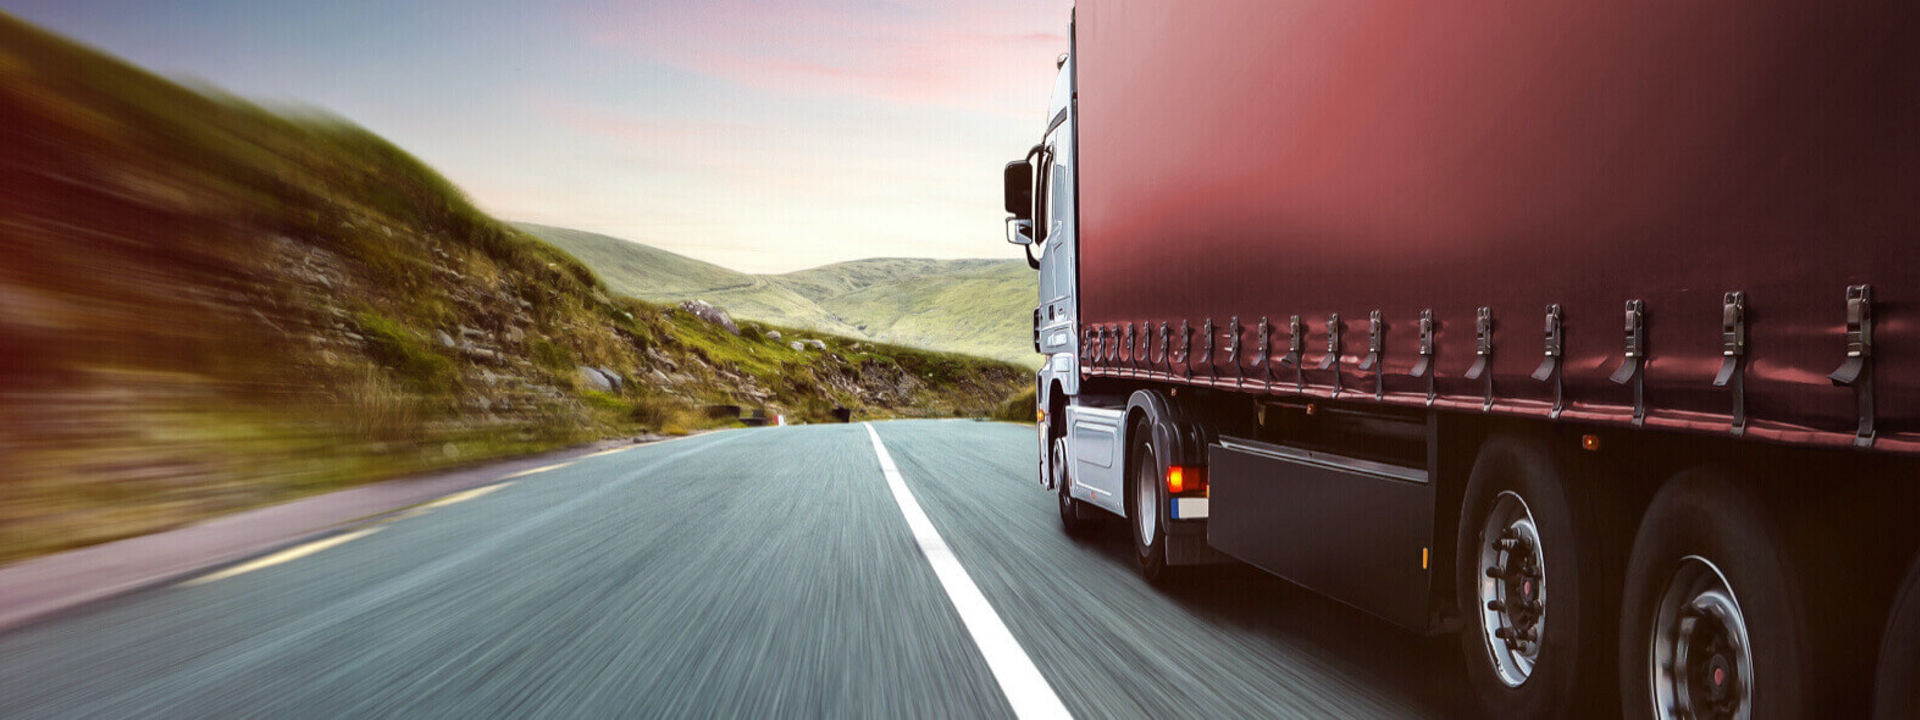 Billedet viser et lastvognstog monteret med Bridgestone lastvognsdæk på en vej.